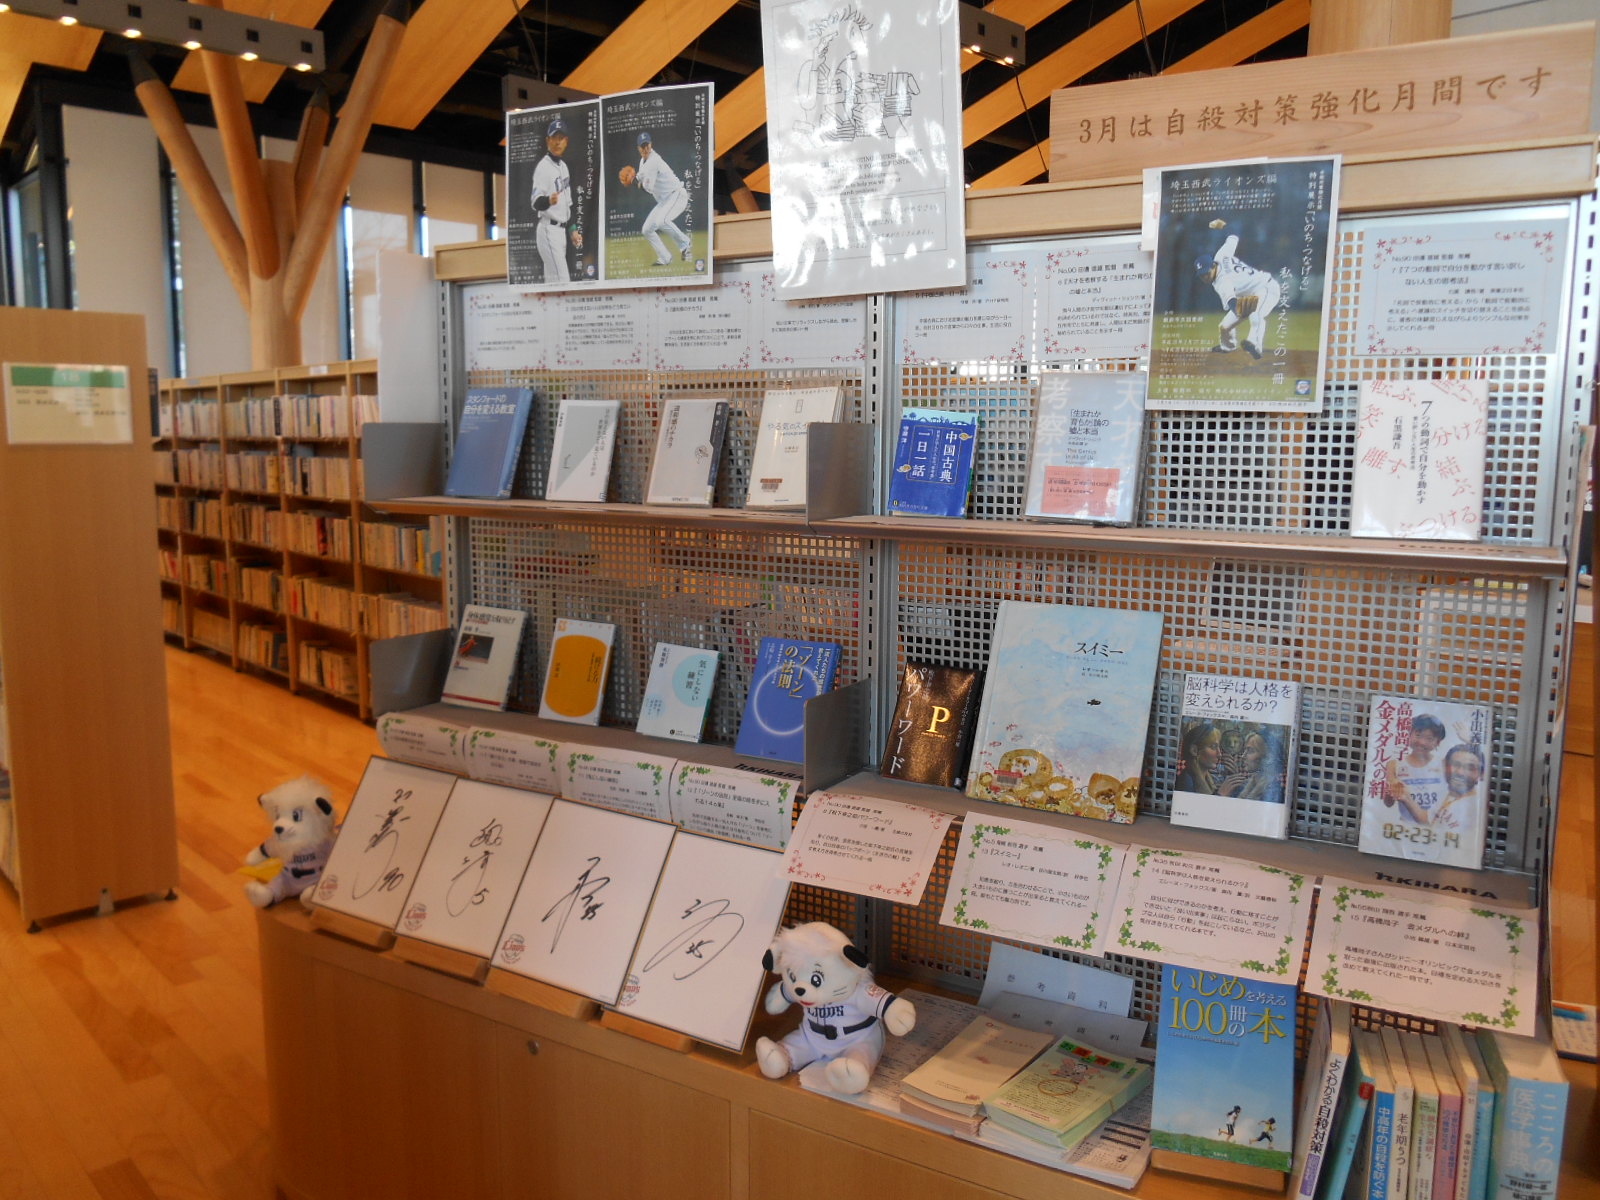 西武ライオンズ監督・選手等による『自らの人生に影響を及ぼした図書』などたくさんの本が並ぶ飯能市立図書館内の写真